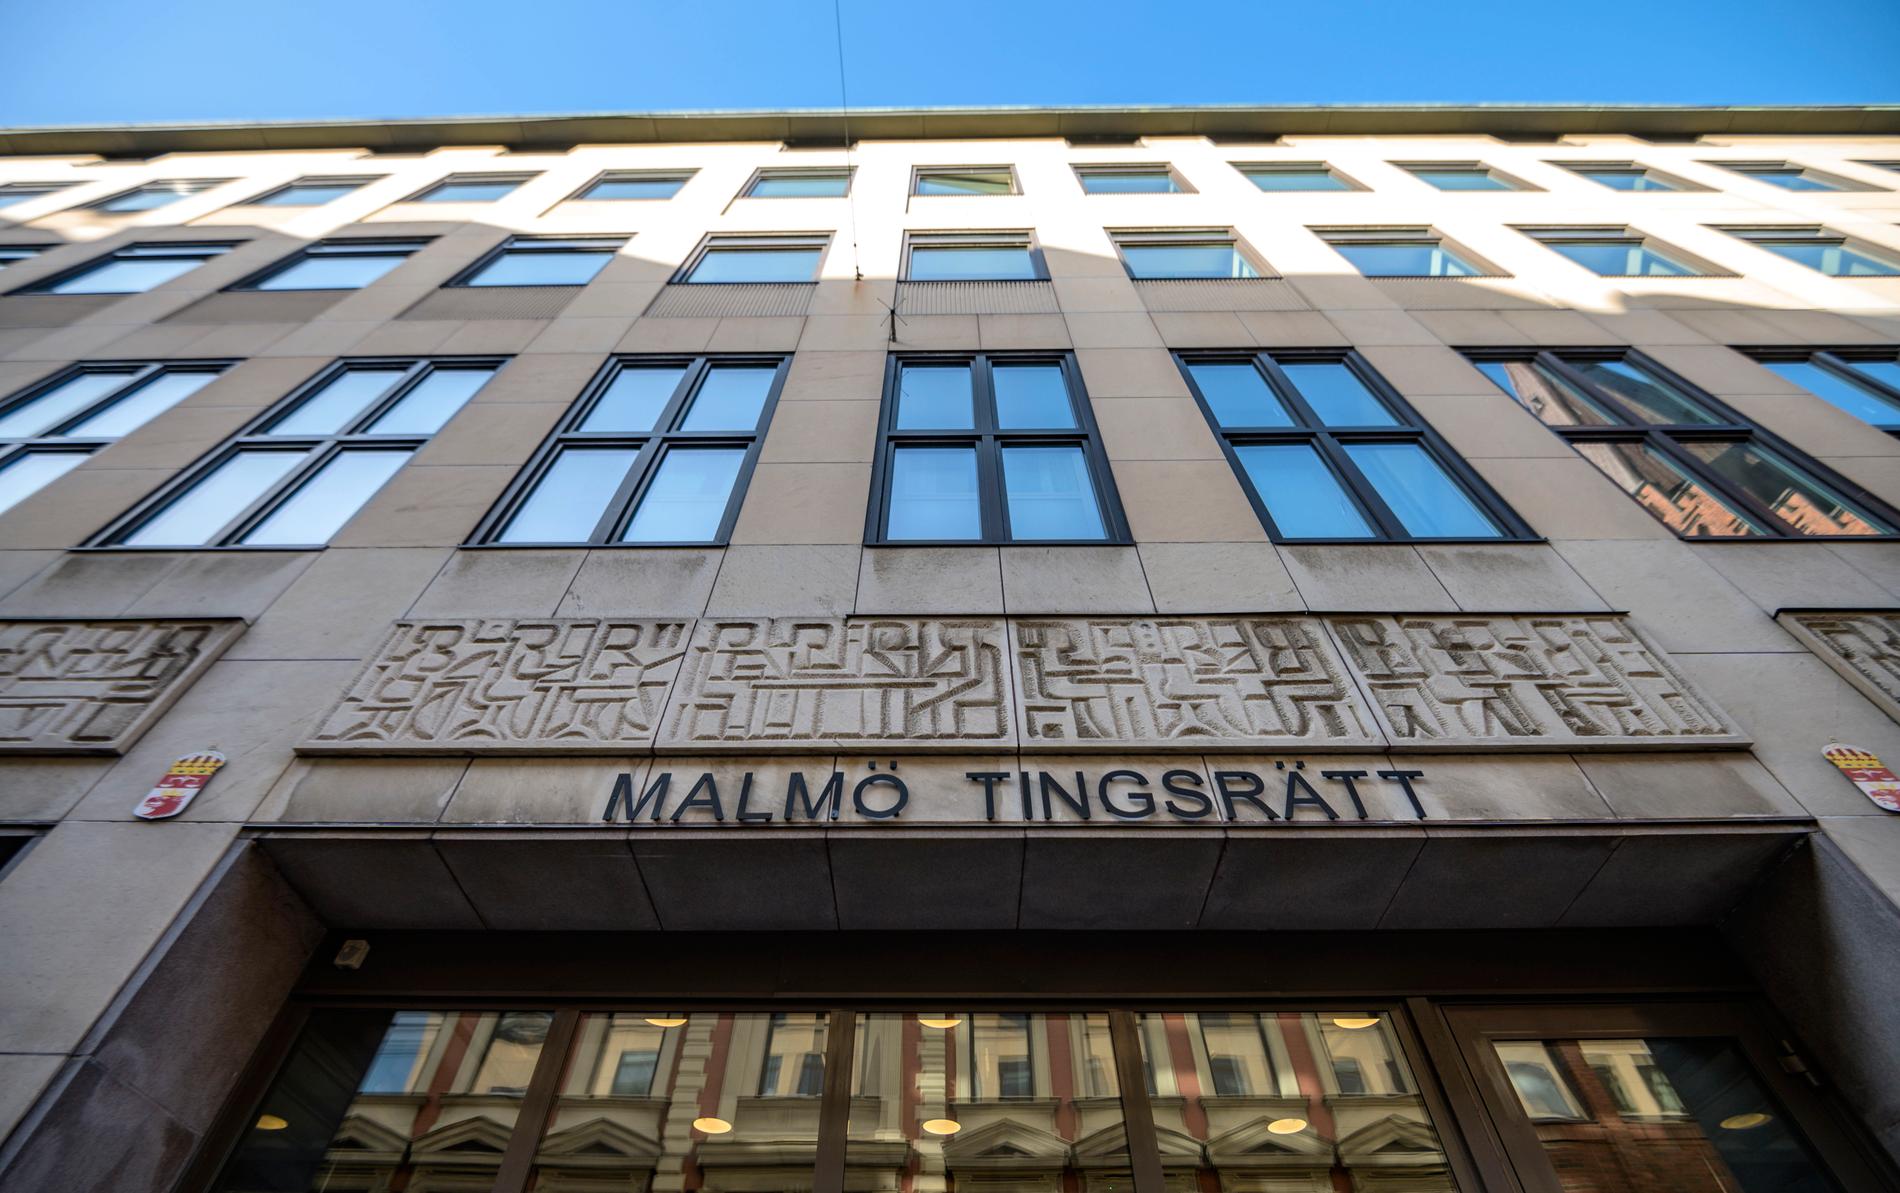 En kvinna i 40-årsåldern och två män – en i 40-årsåldern och en i 18-årsåldern – åtalas vid Malmö tingsrätt för penningtvättbrott. 